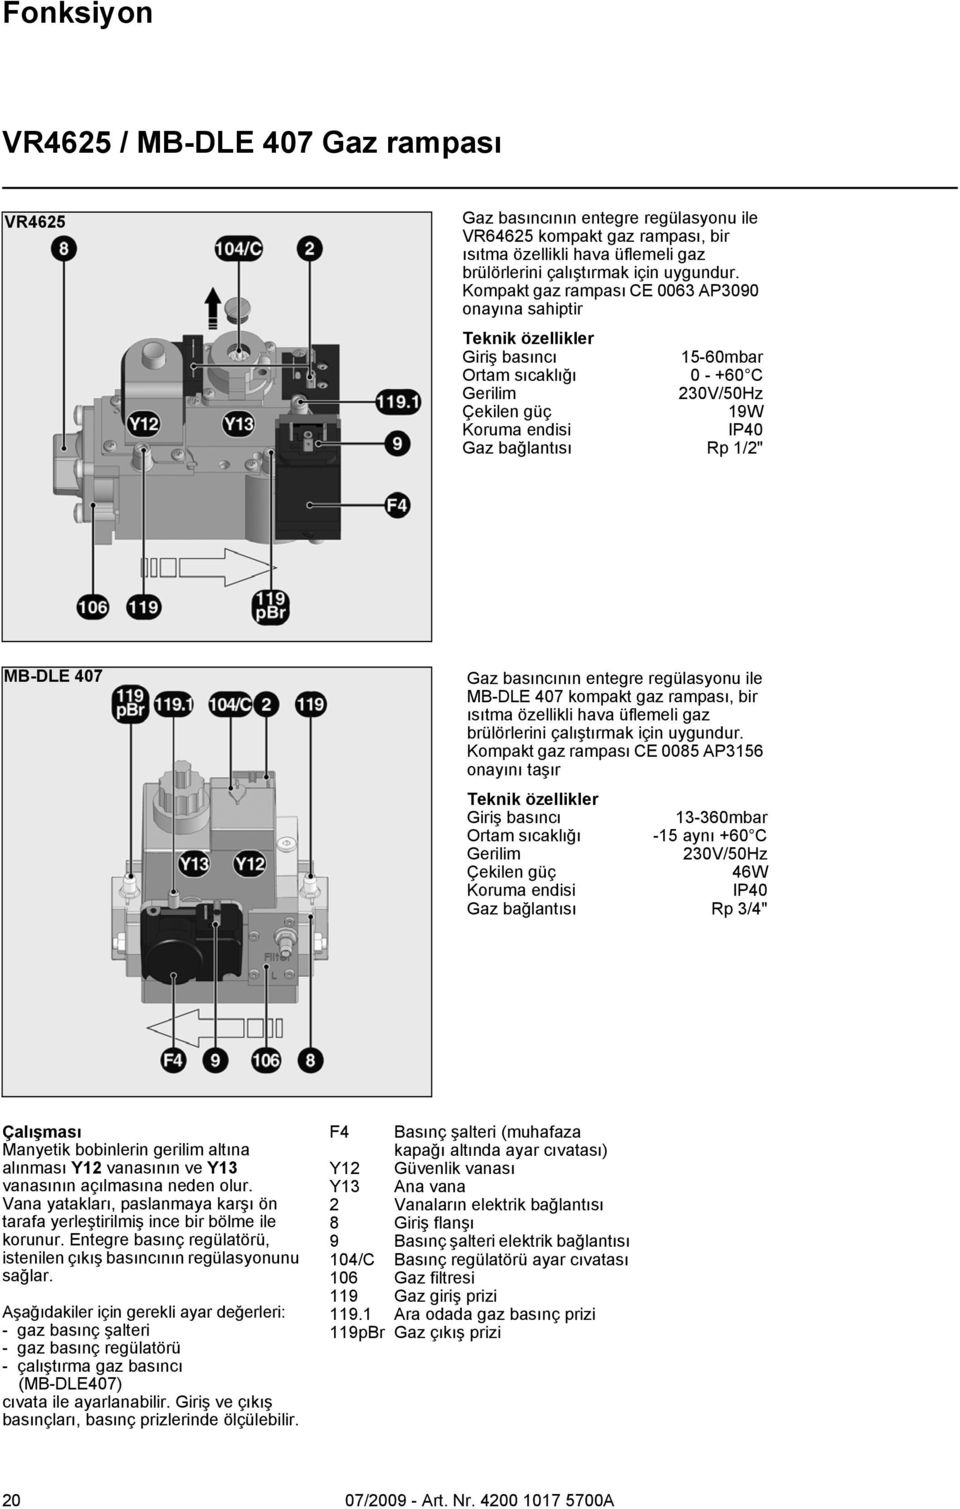 MB-DLE 407 Gaz basıncının entegre regülasyonu ile MB-DLE 407 kompakt gaz rampası, bir ısıtma özellikli hava üflemeli gaz brülörlerini çalıştırmak için uygundur.